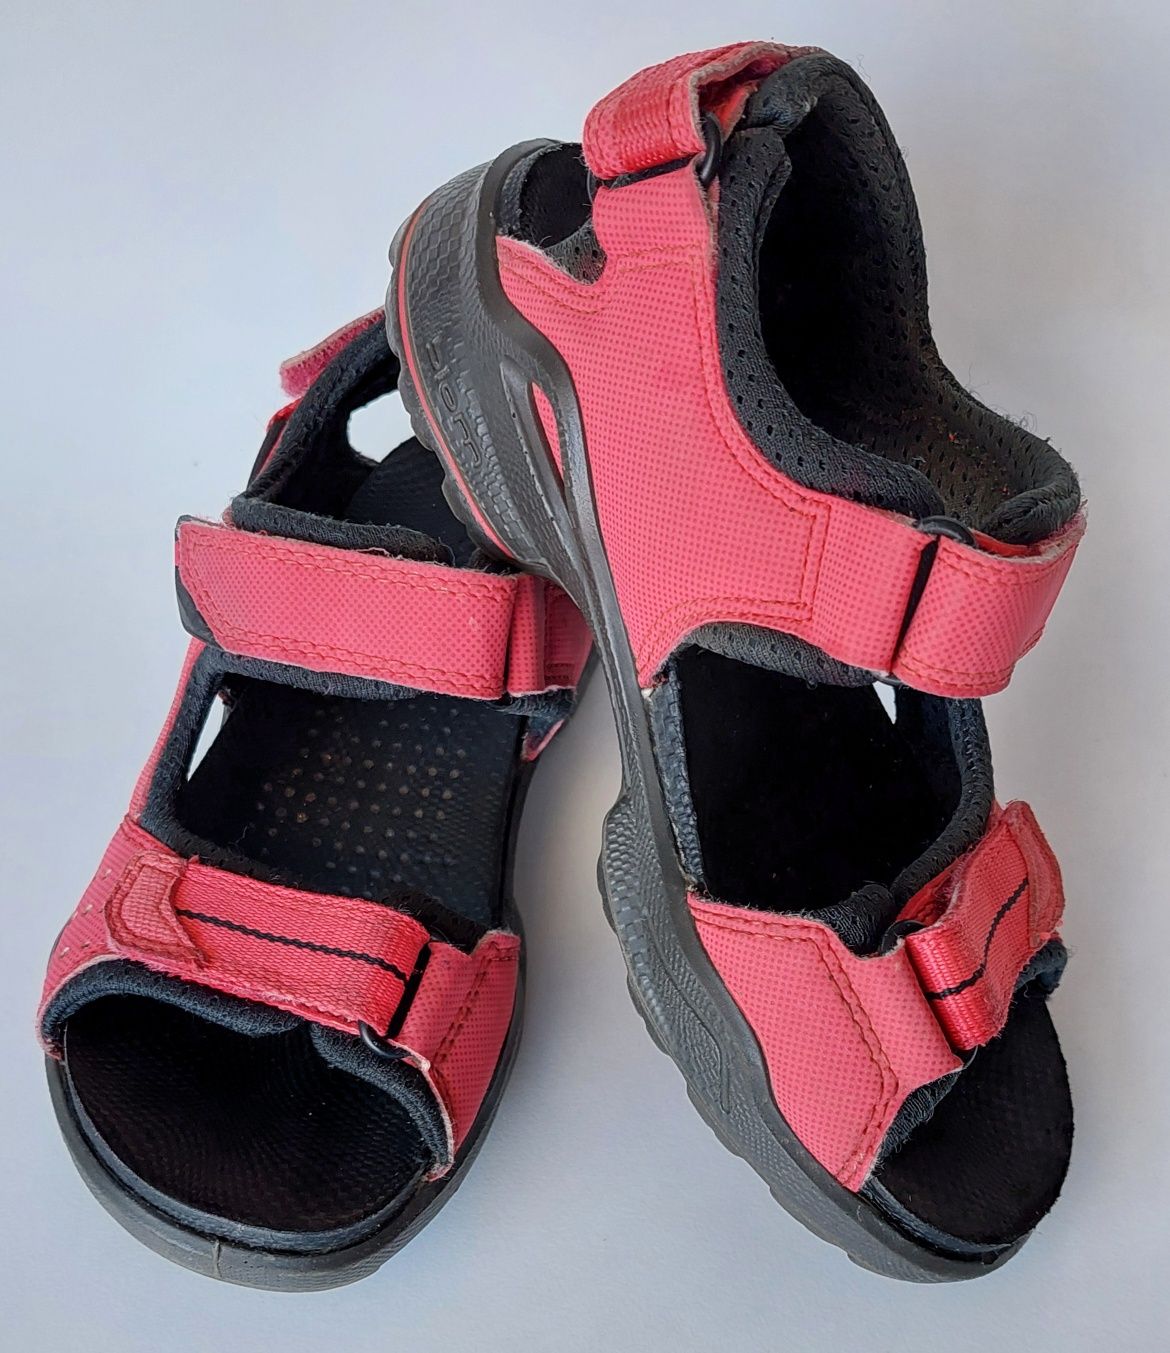 Buty sandały Ecco Biom Sandal roz.31